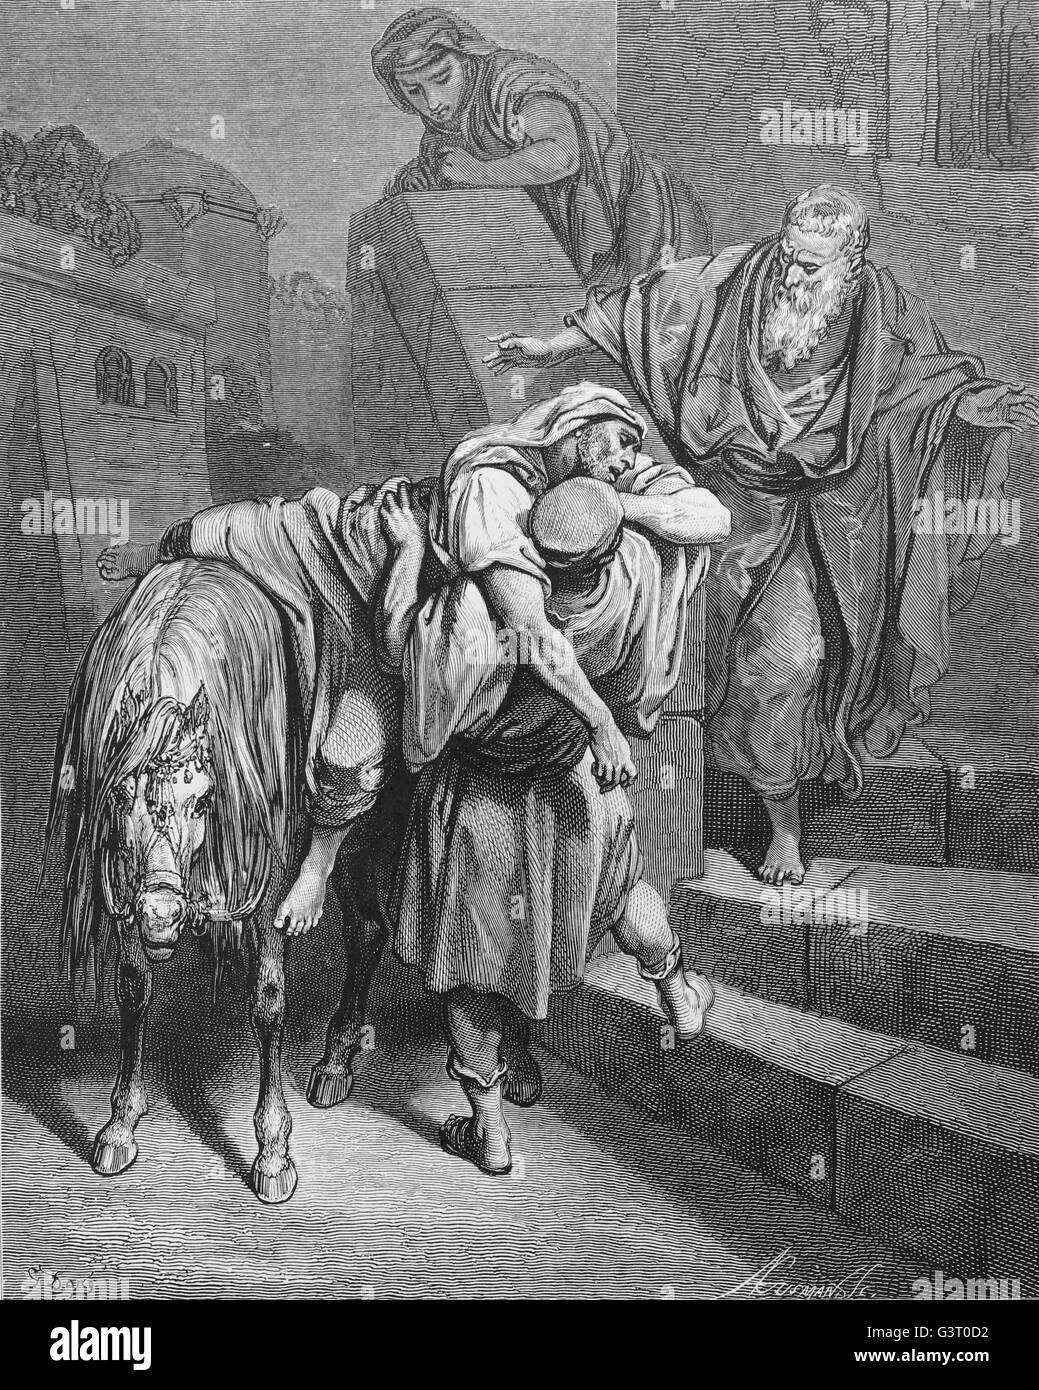 La llegada del buen samaritano en el Inn. Lucas 10:34. Grabado de Gustave Doré. Siglo xix. Foto de stock